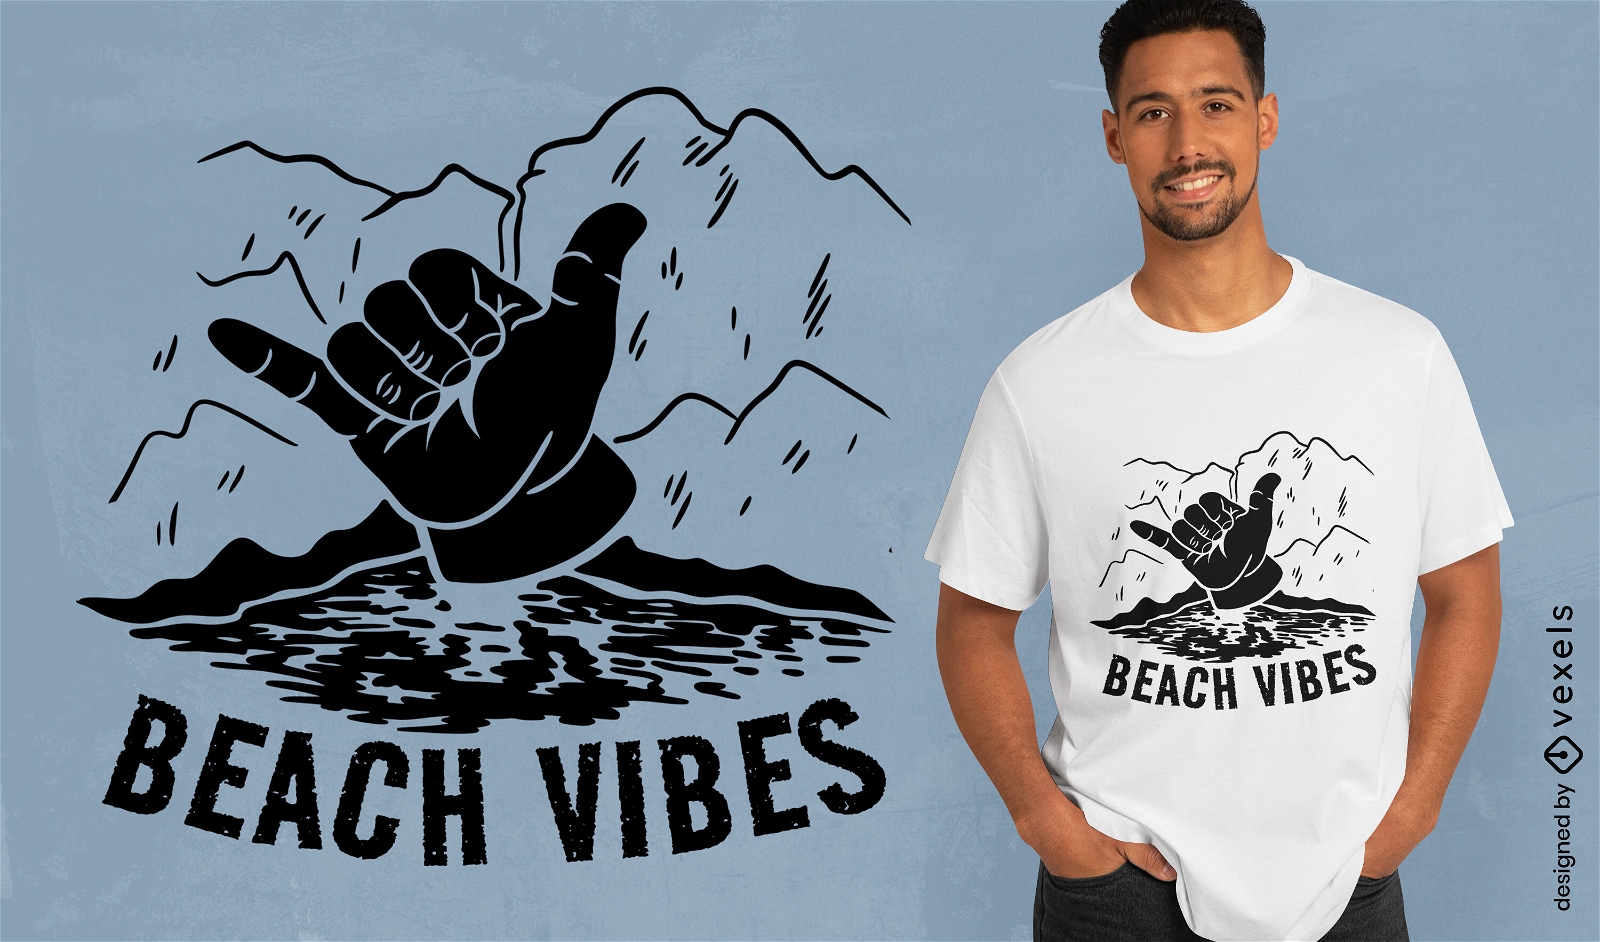 Diseño de camiseta de mano shaka de vibraciones de playa.